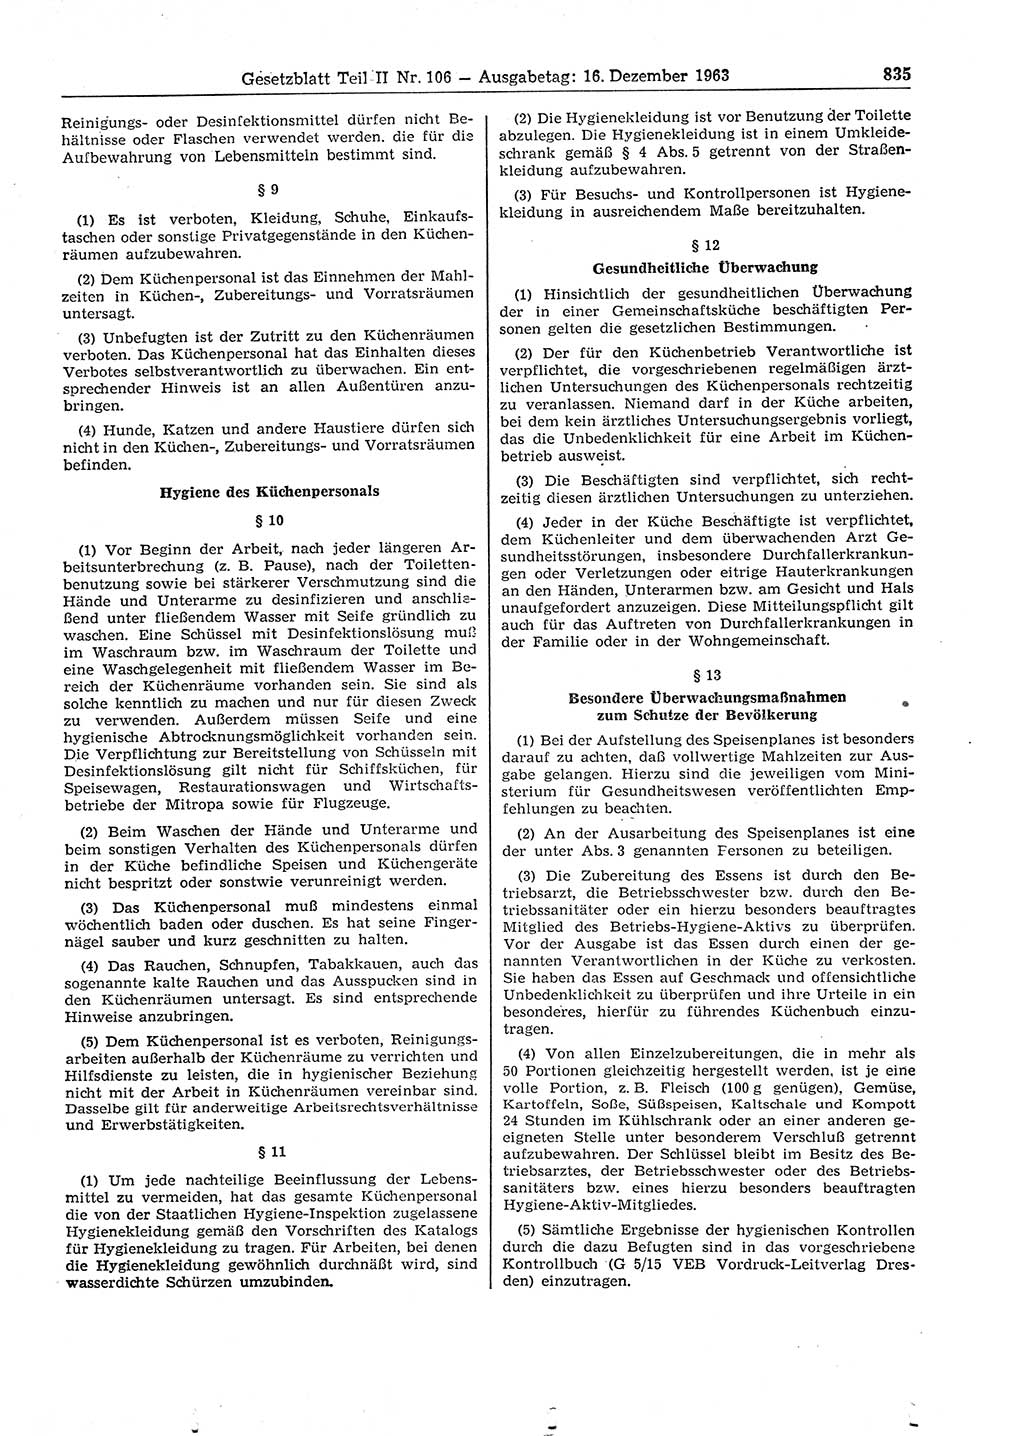 Gesetzblatt (GBl.) der Deutschen Demokratischen Republik (DDR) Teil ⅠⅠ 1963, Seite 835 (GBl. DDR ⅠⅠ 1963, S. 835)